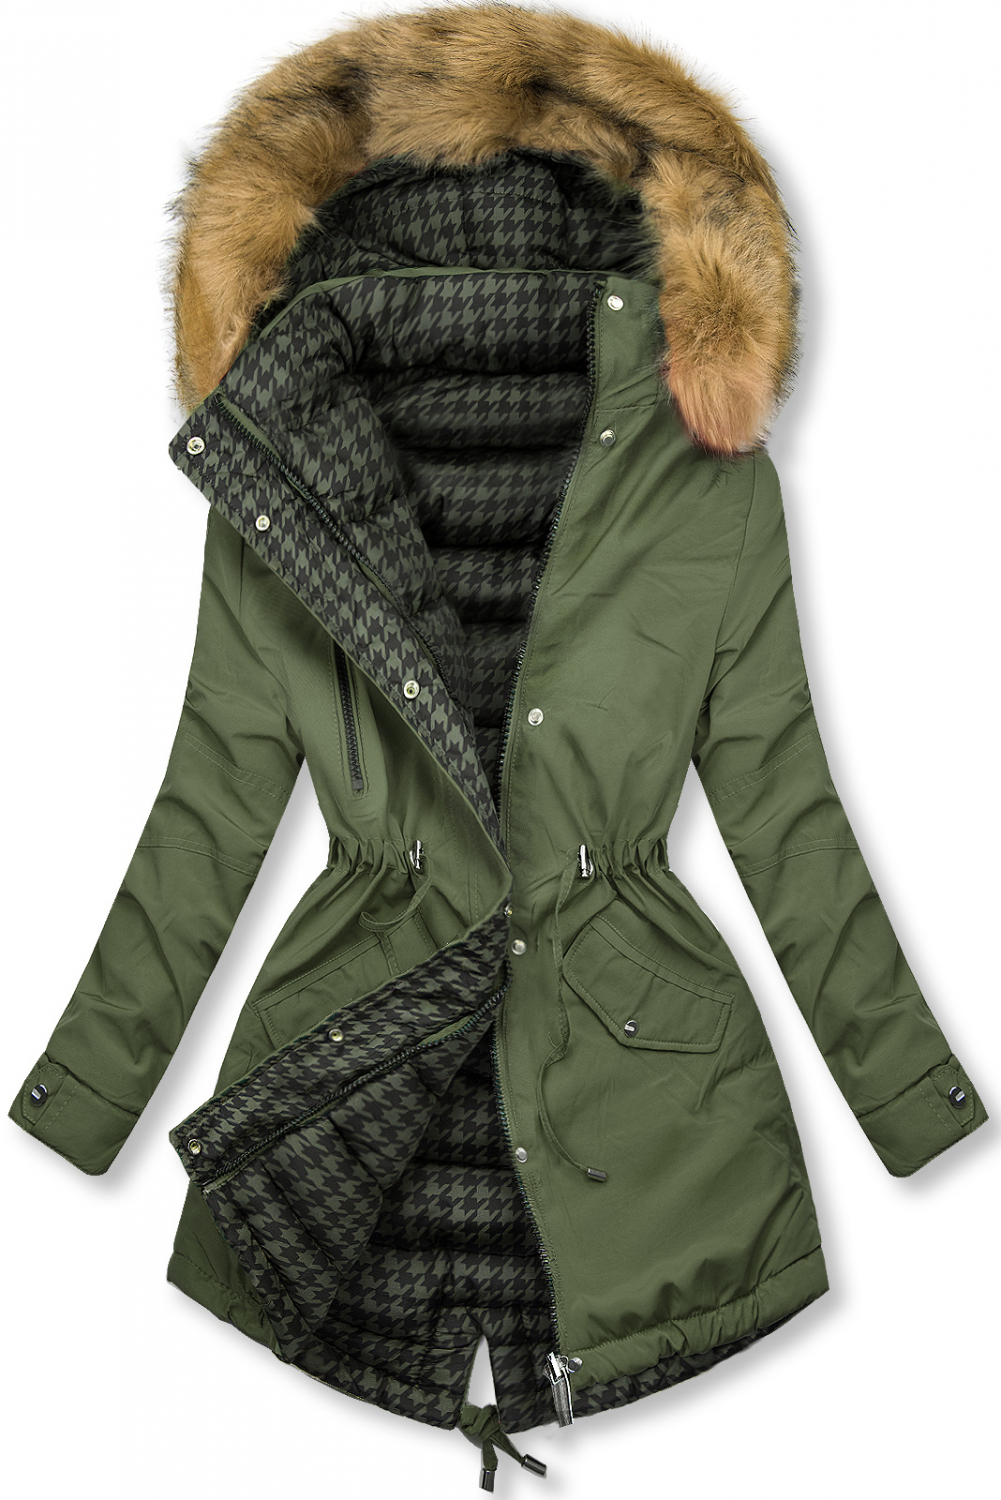 Khaki obojstranná parka na zimu.
- vyvýšený golier 
- odopínateľná kapucňa 
- odopínateľná kožušina
- zapínanie na zips a patentky
- v páse nastaviteľné sťahovanie
- dve predné vrecká 
- všetky prvky v striebornej farbe
- materiál: 100% polyester